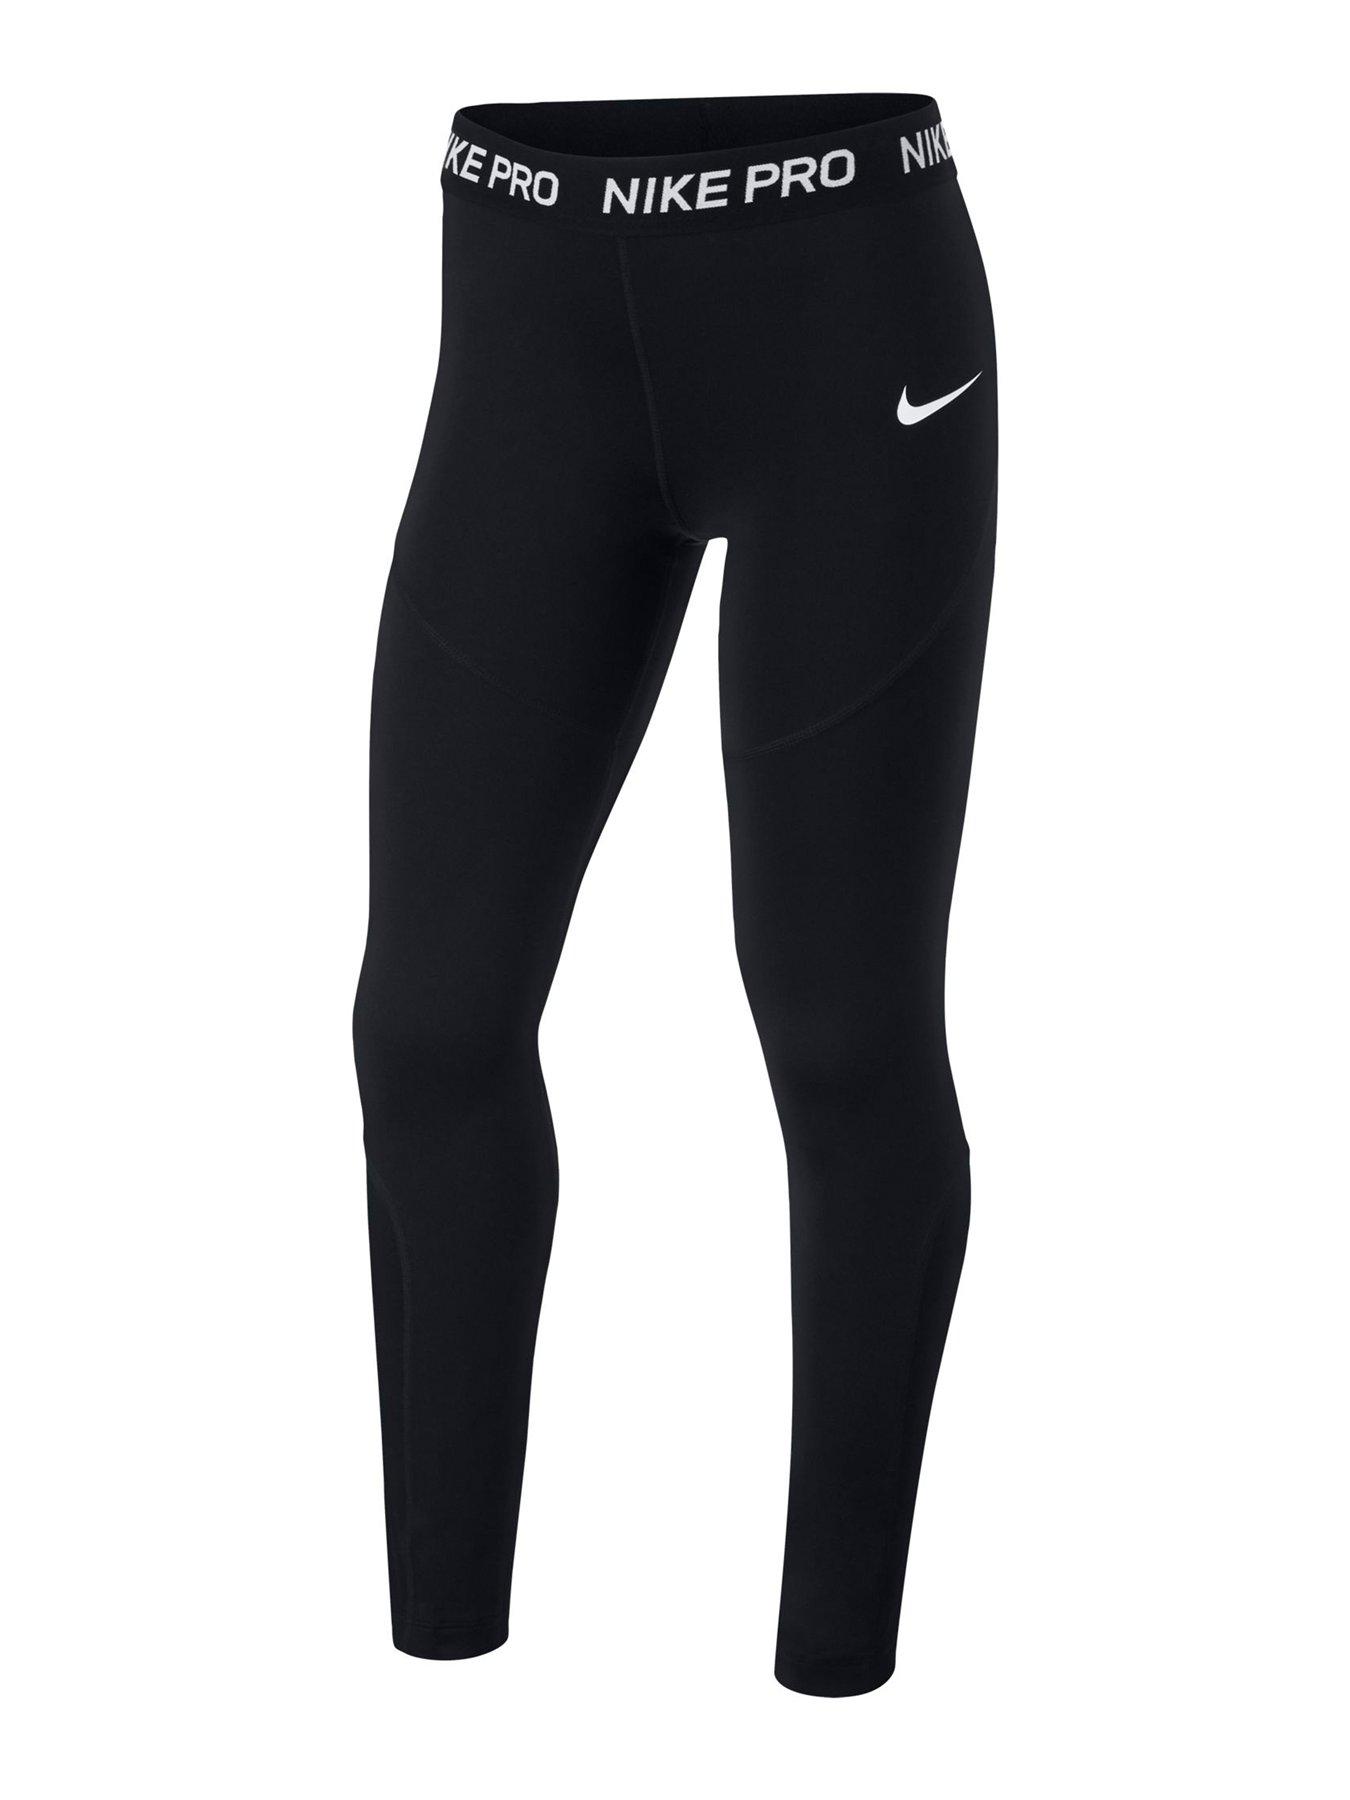 Nike Girls Leggings - Black | very.co.uk